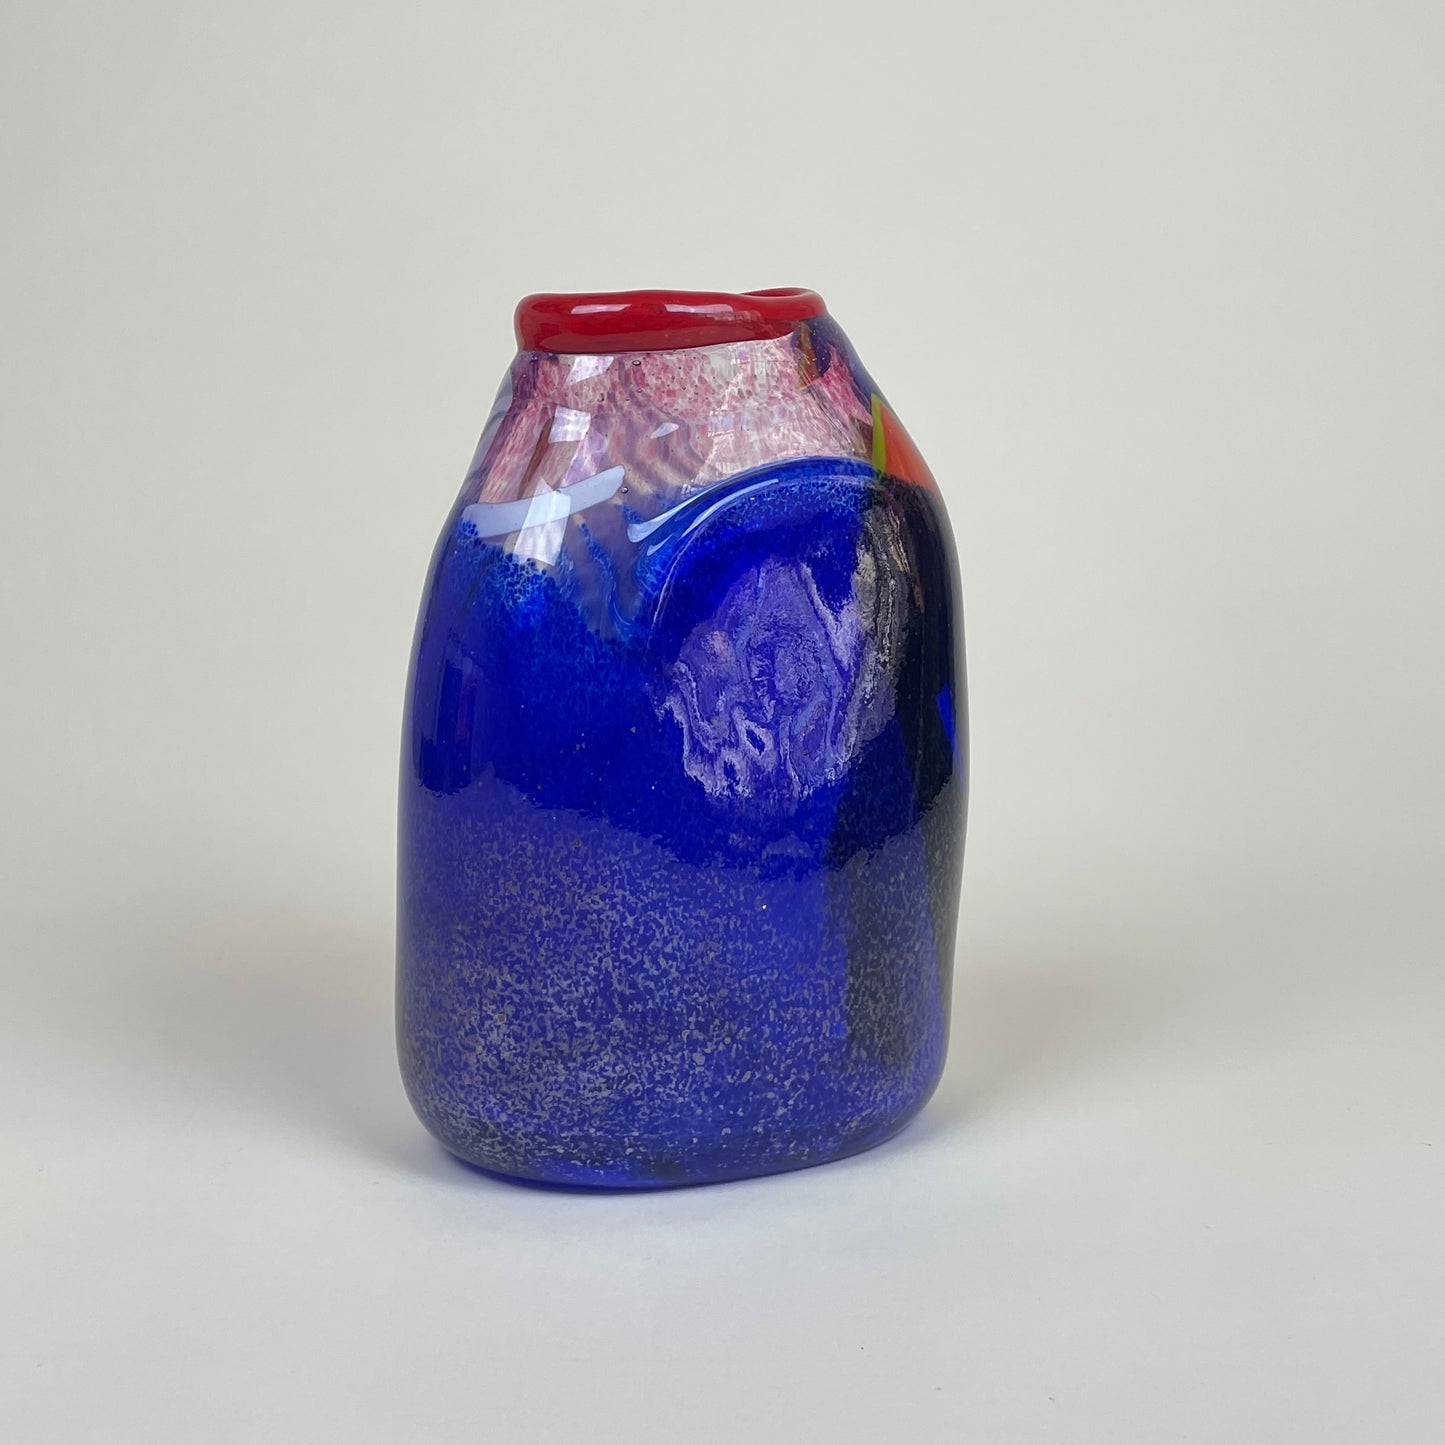 Glass vase by Aki Keitel